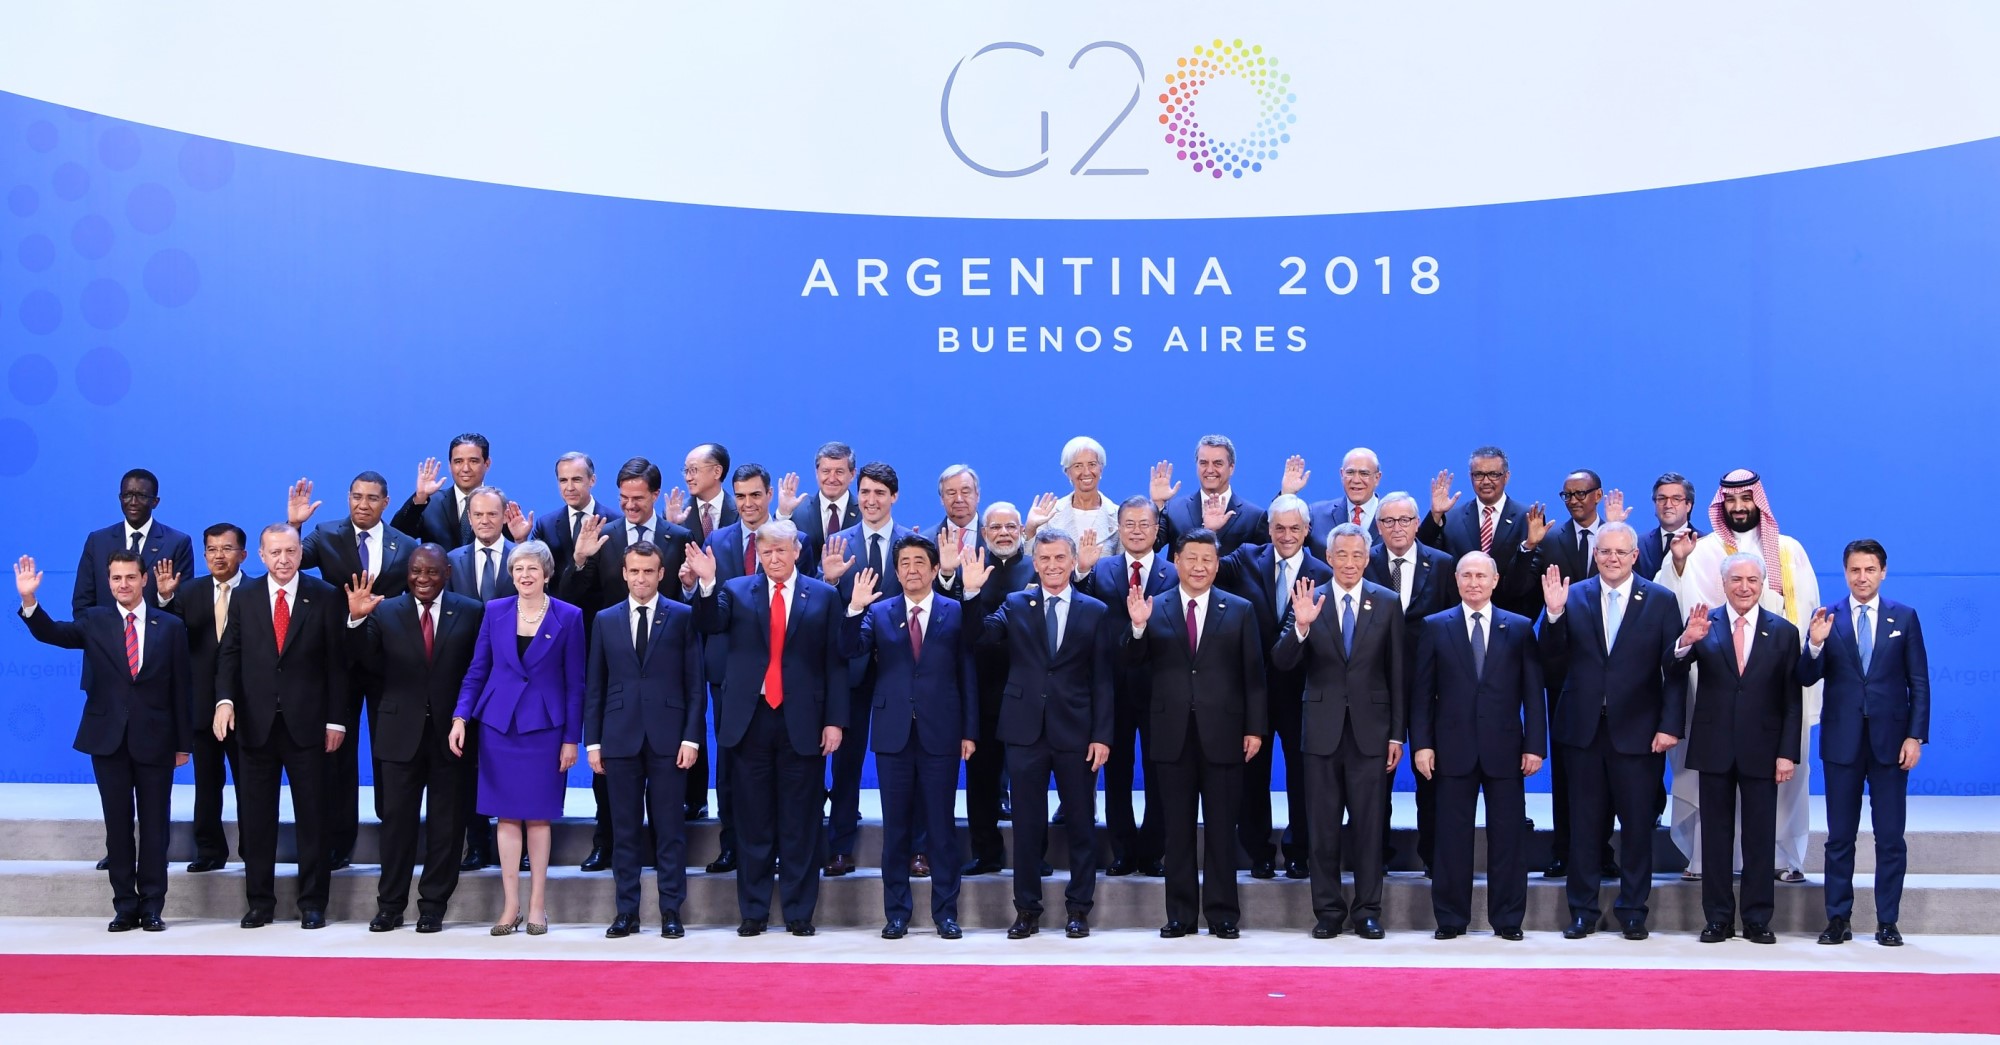 G-20 